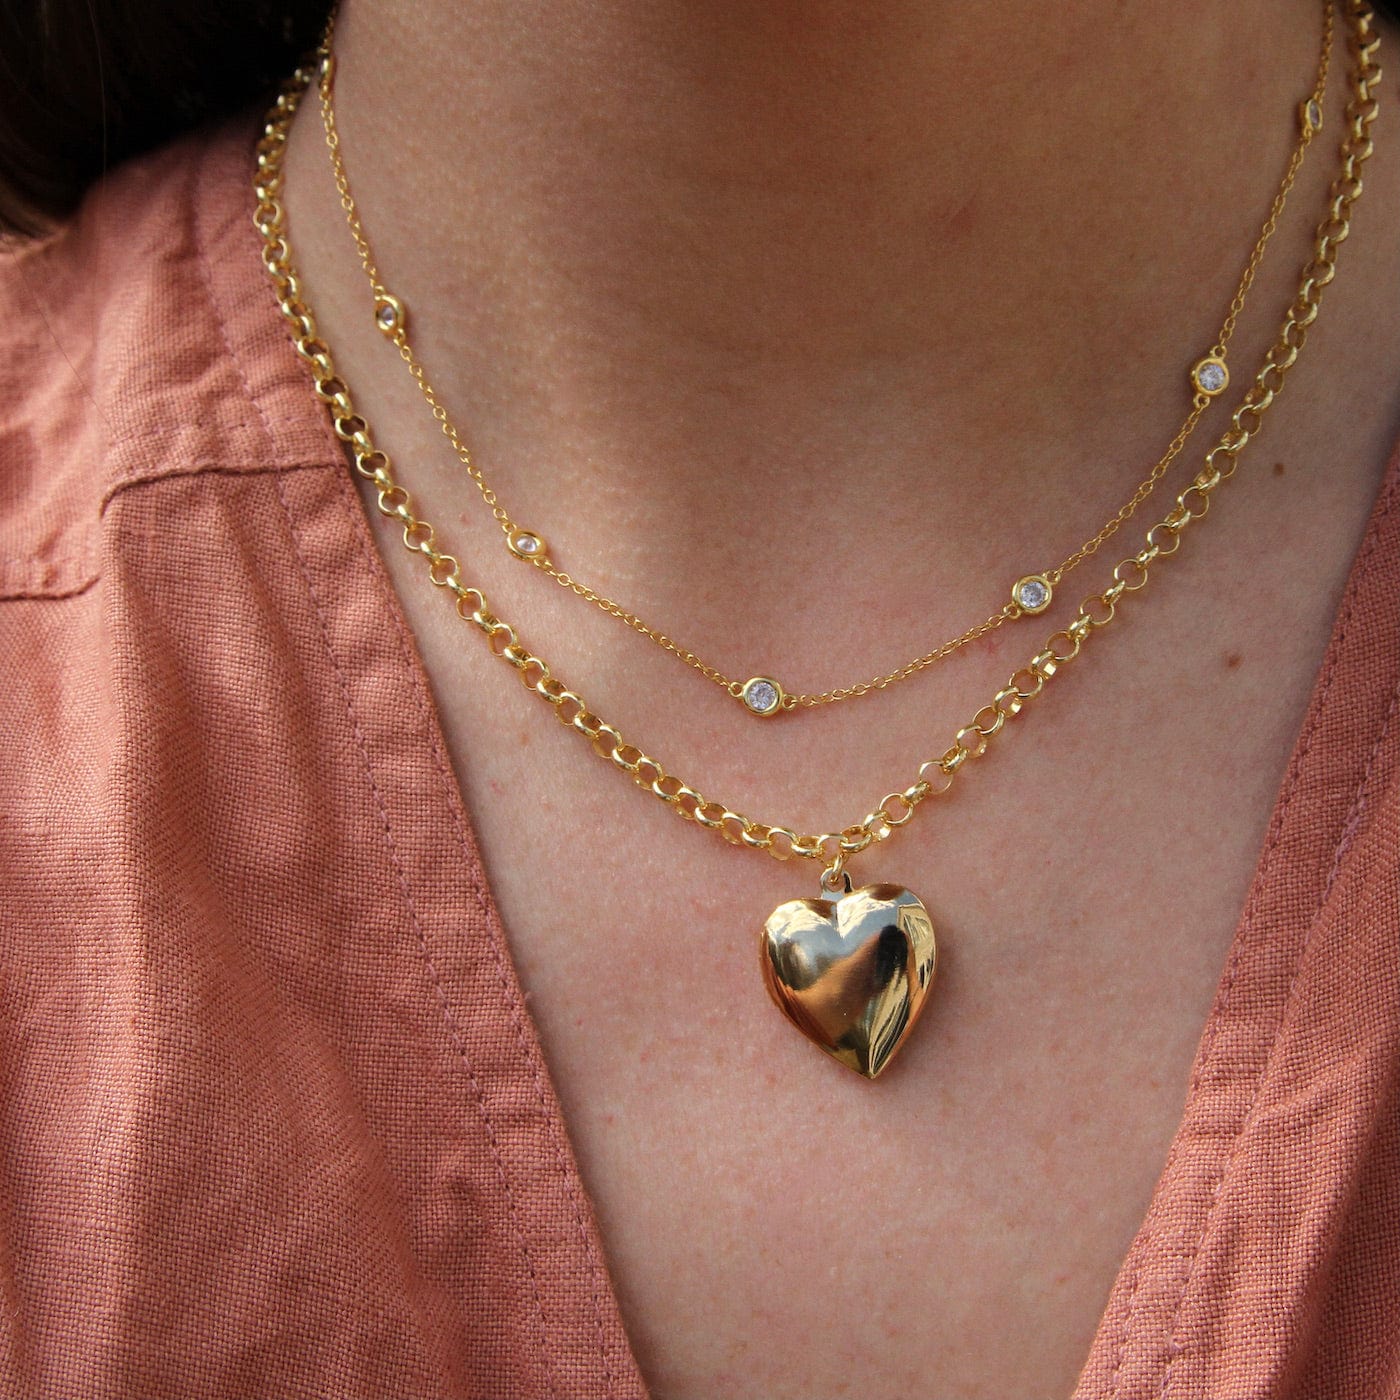 NKL-GPL Link Chain Vintage Heart Locket Necklace